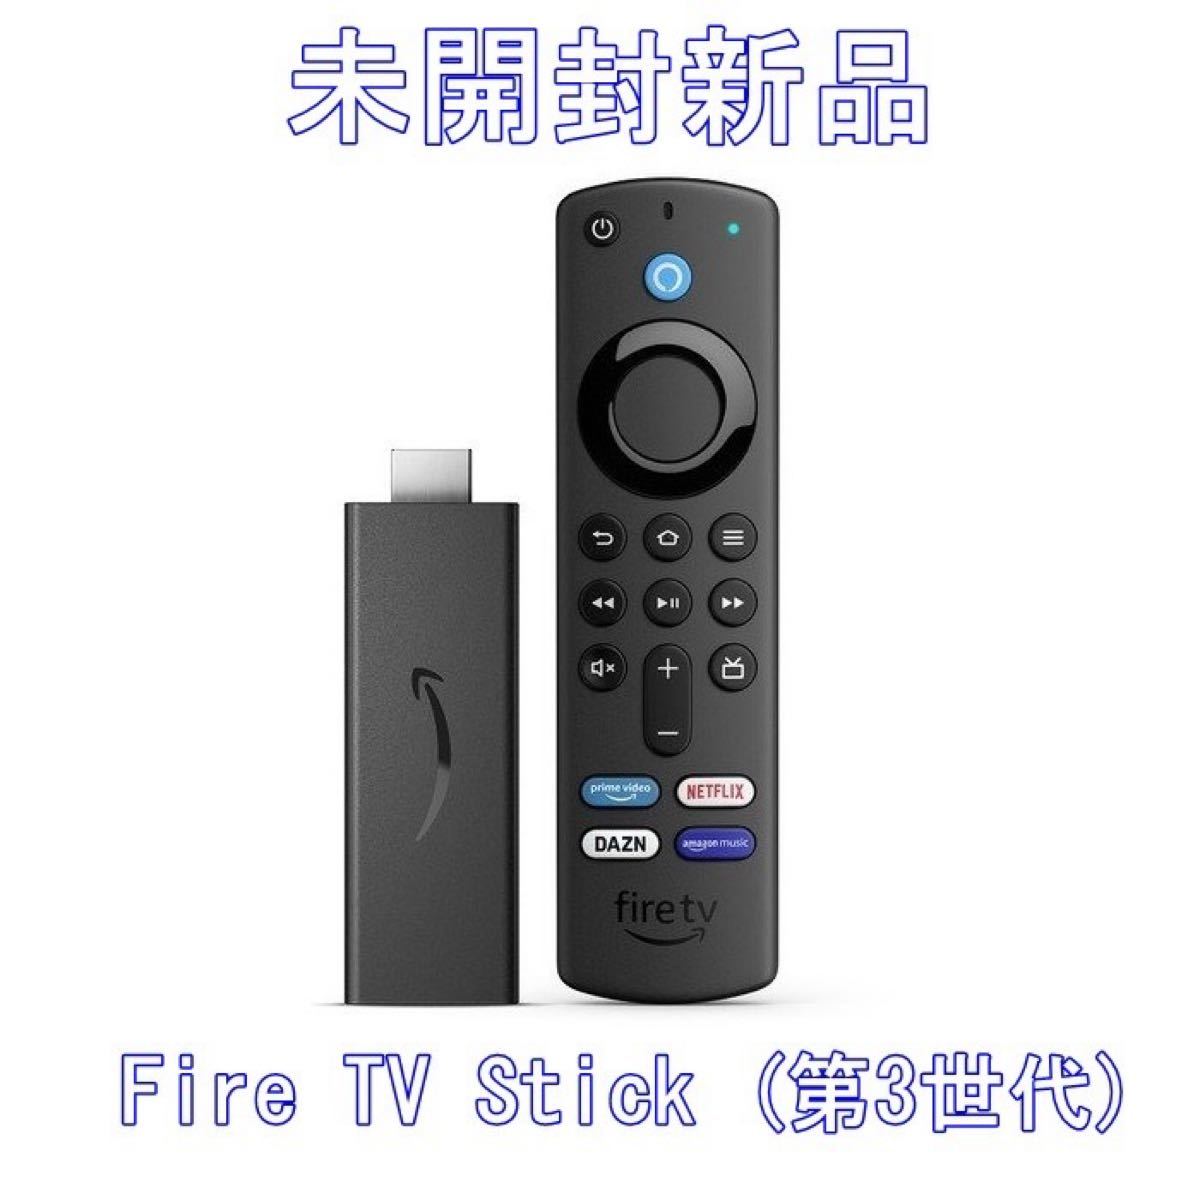 大特価!!Amazon Fire TV Stick (第3世代)Alexa対応音声認識リモコン付属 その他AV周辺機器 テレビ、映像機器 テレビ 、オーディオ、カメラ￥9,000-www.firefreeze.com